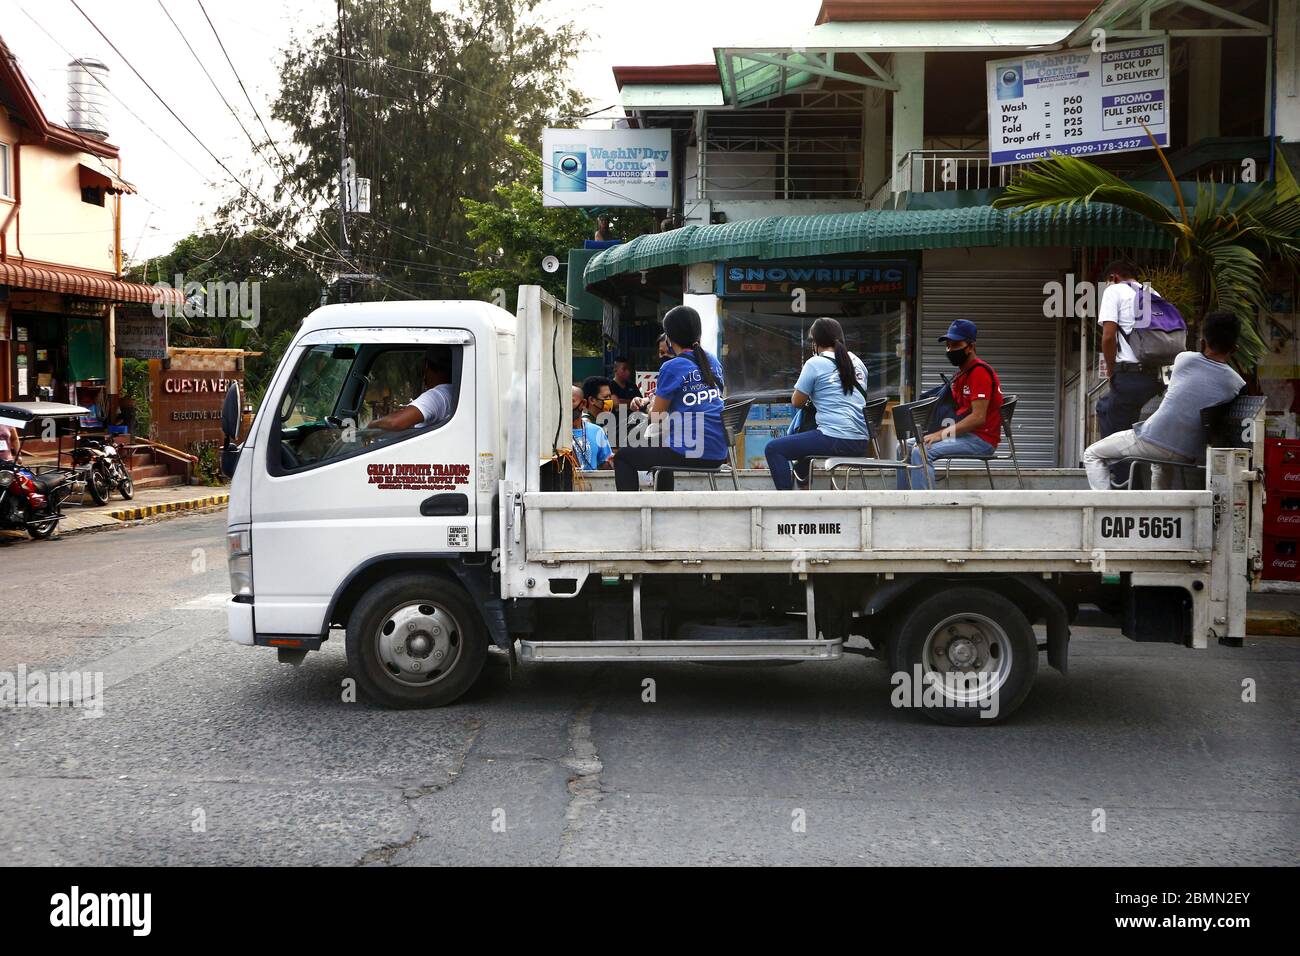 Antipolo City, Philippines - 7 mai 2020 : un camion de cargaison offre un trajet gratuit pour les personnes lorsque les véhicules de transport de masse en commun ont été interdits pendant Covid Banque D'Images